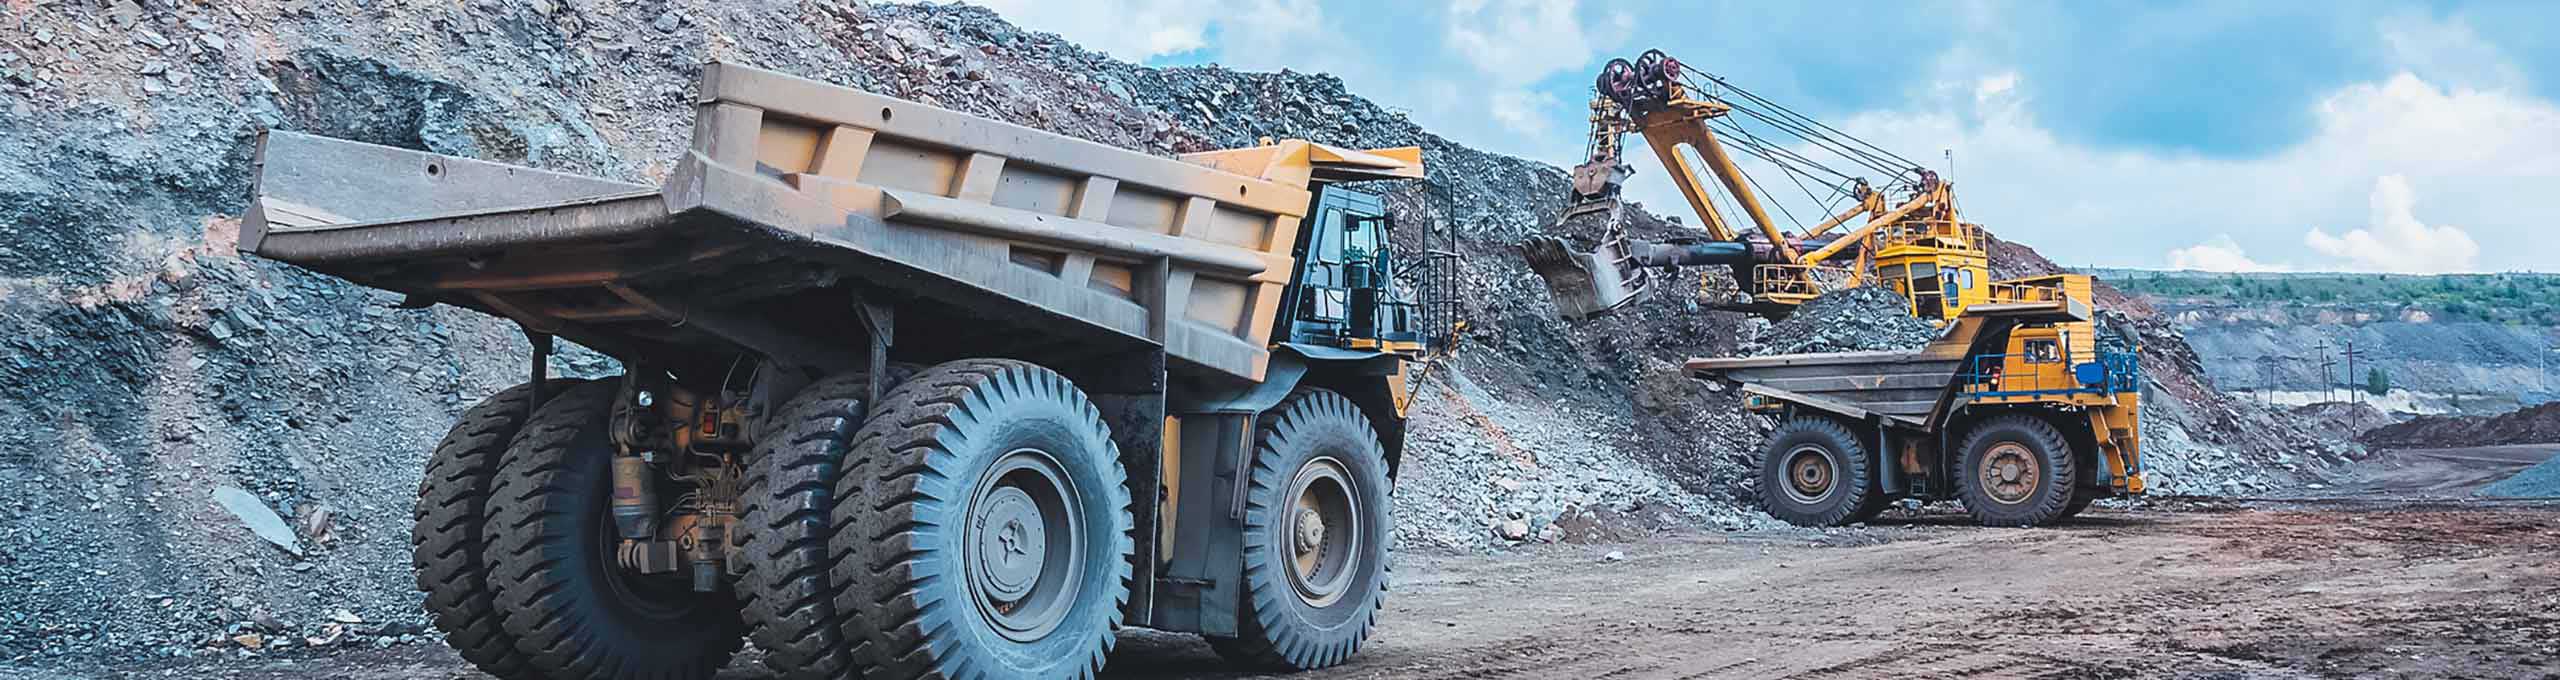 grande escavadeira amarela extraindo minério de ferro em mina a céu aberto e carregando um caminhão pesado